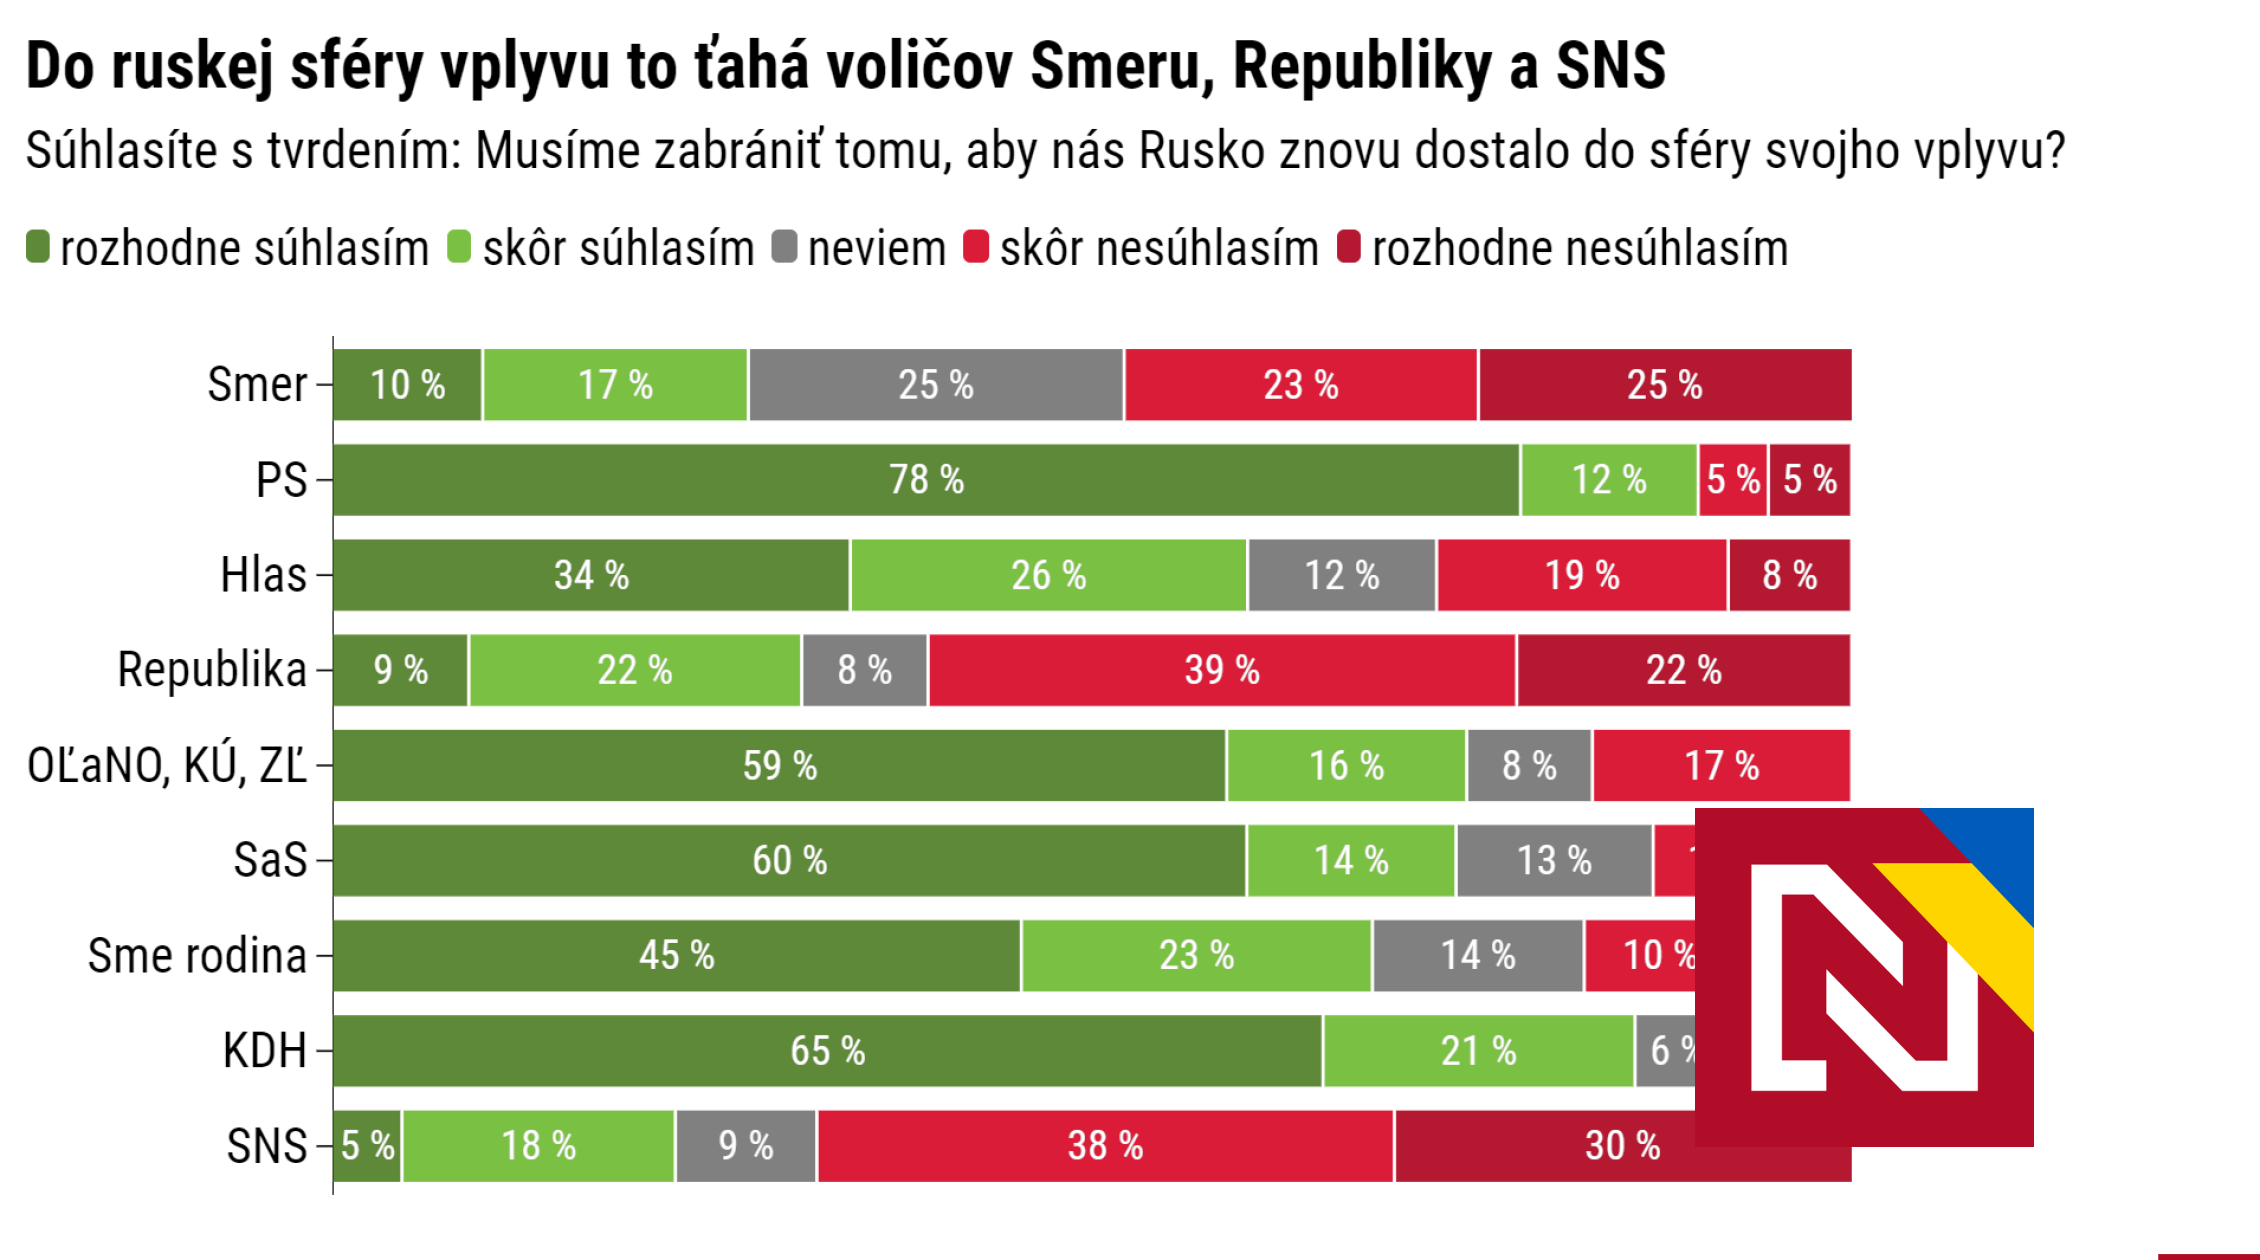 Il attire les électeurs du SNS, de la Republika et du Smer dans la sphère d’influence russe.